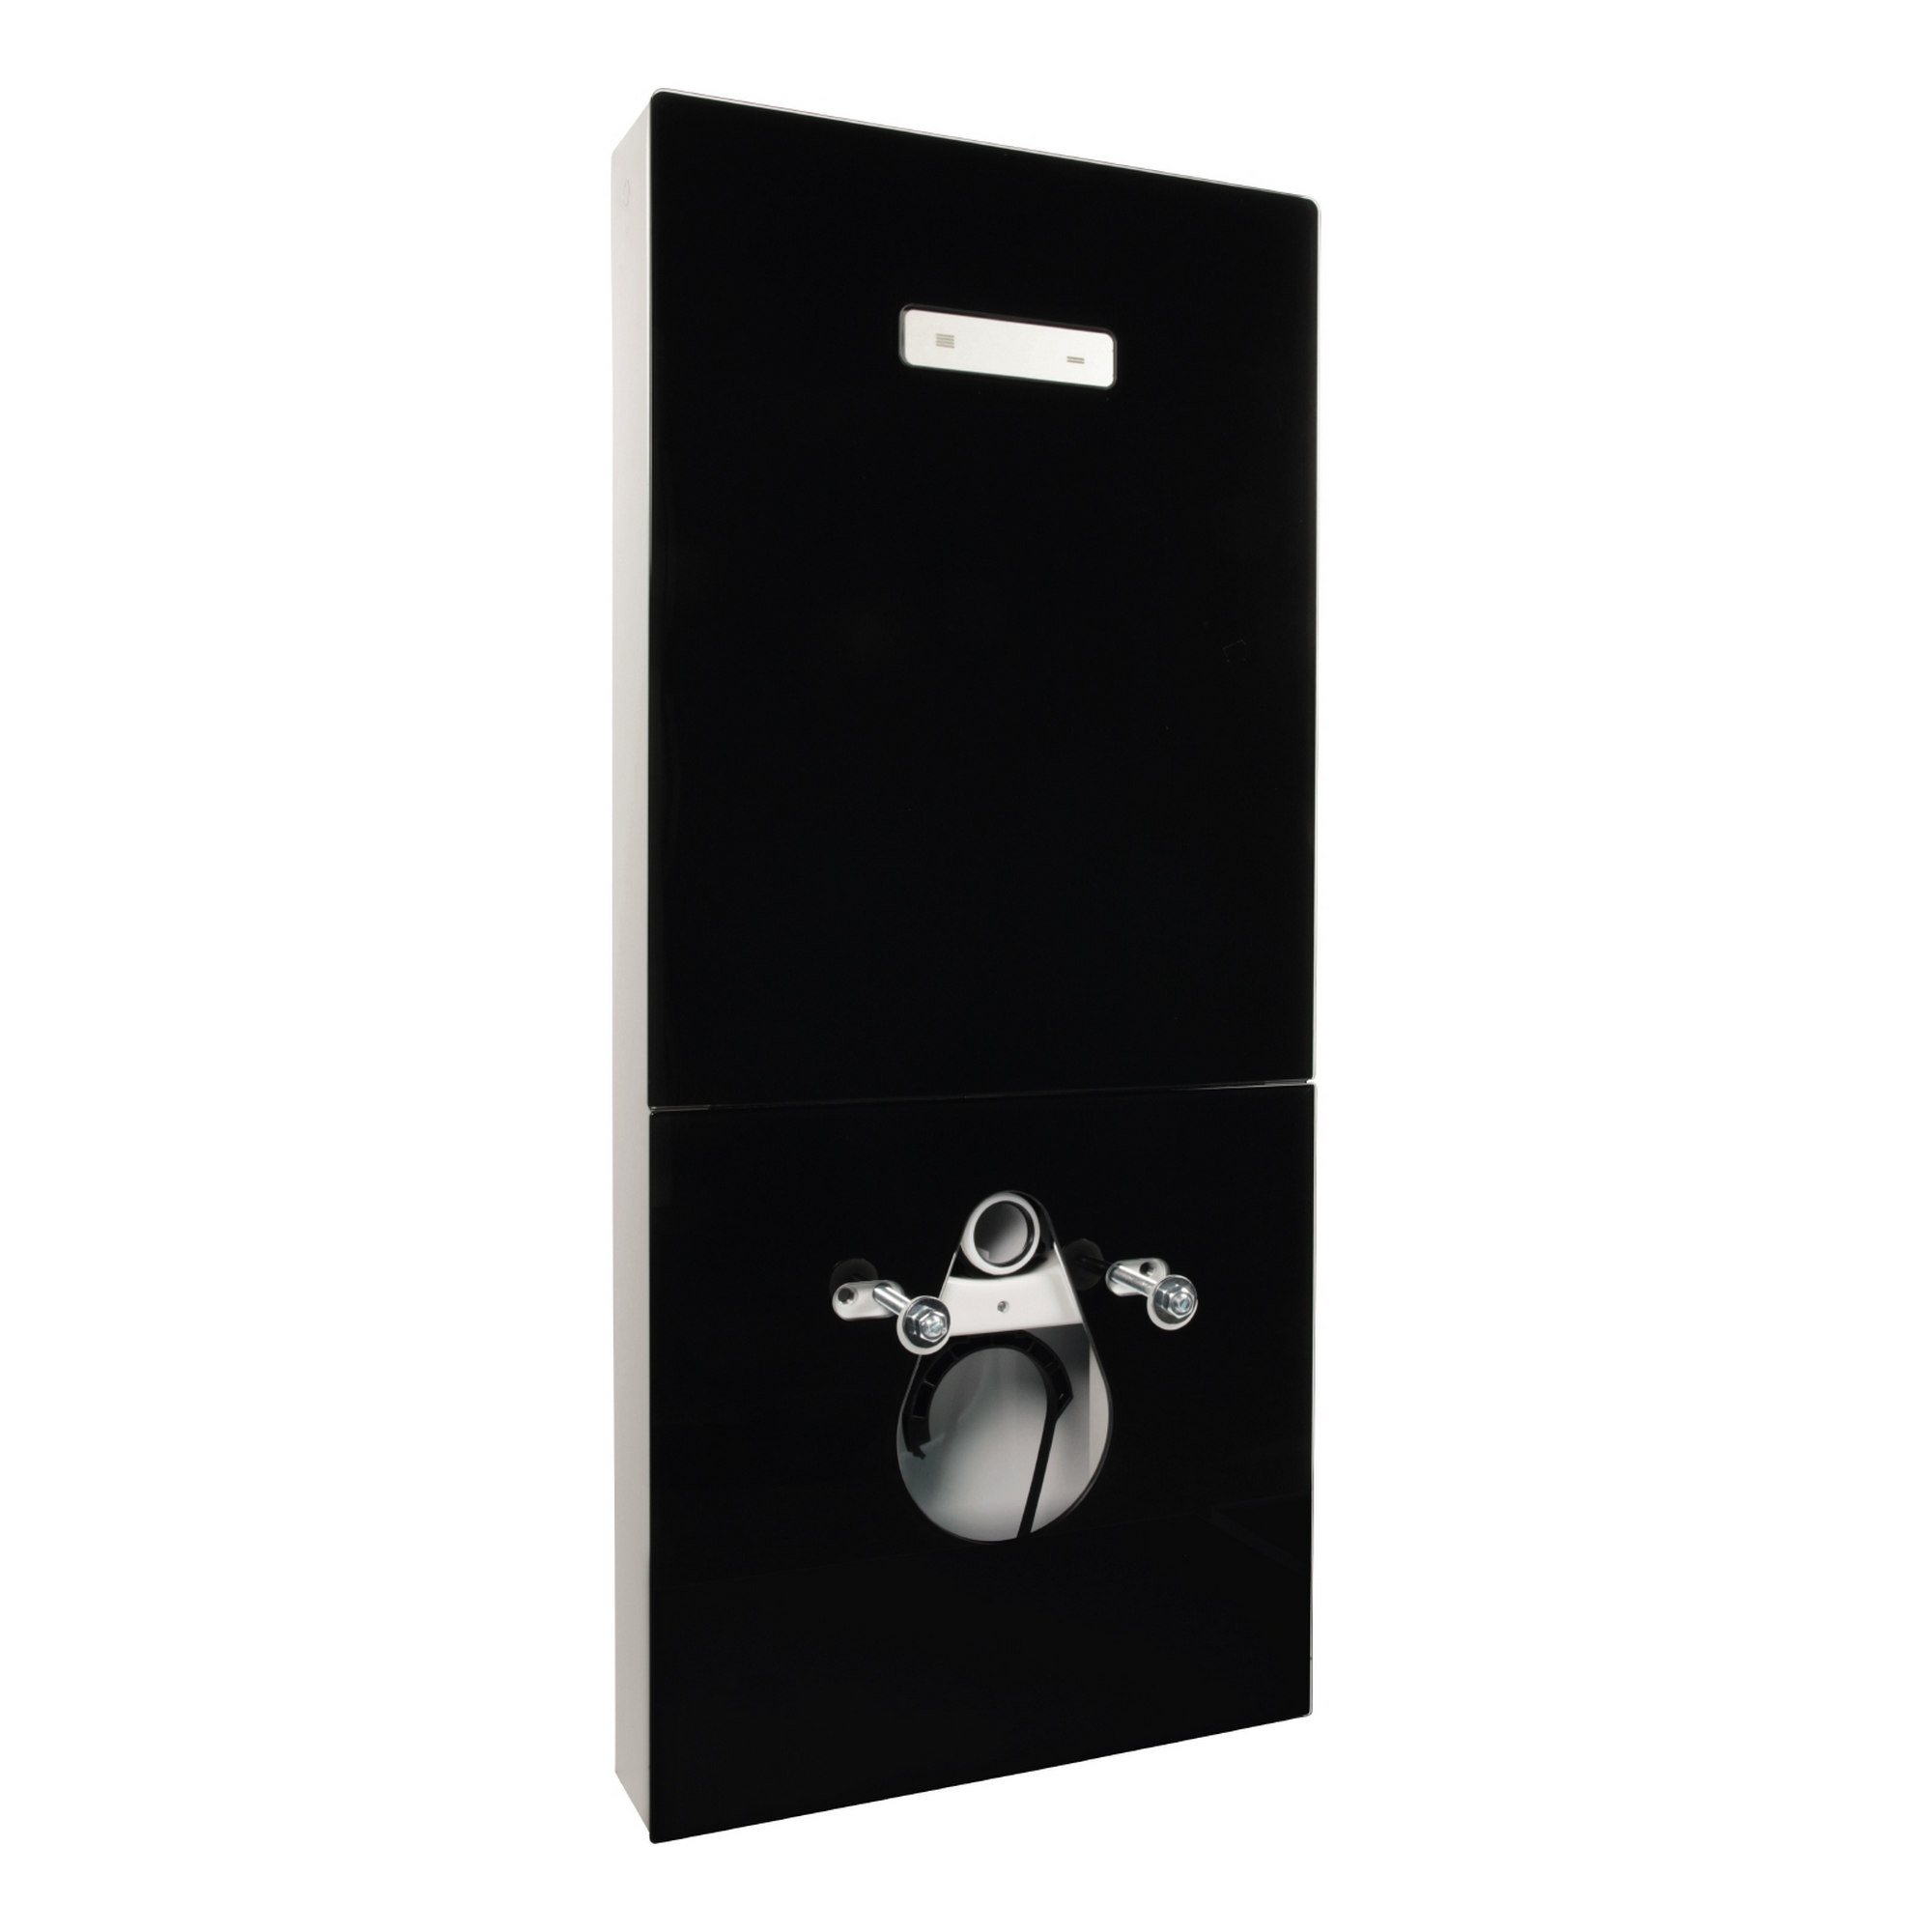 Sanitärmodul für Wand-WC schwarz hochglanz, mit Betätigungsplatte + product picture